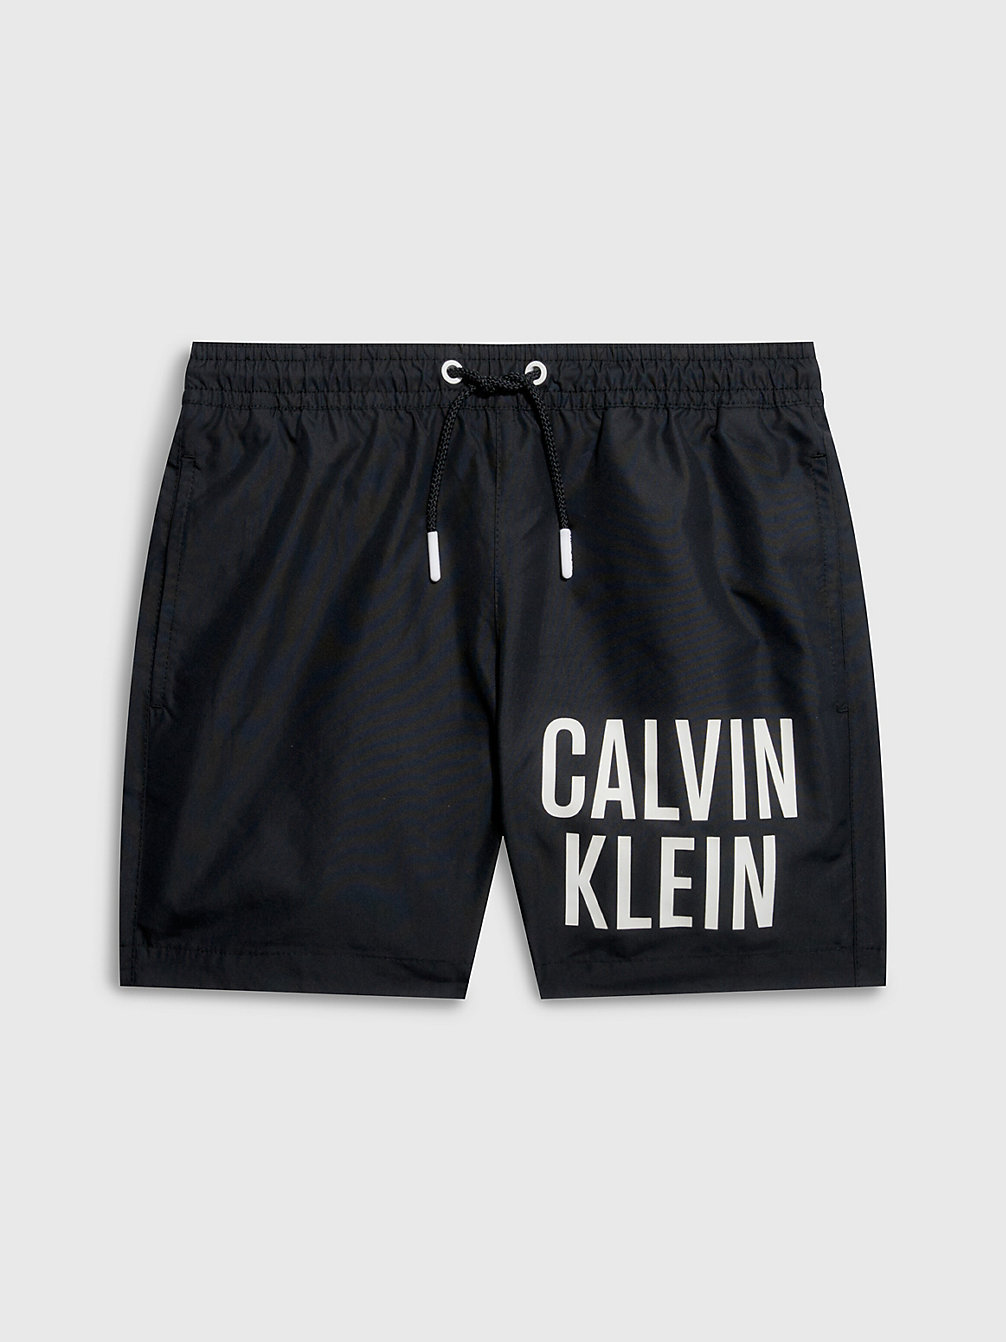 PVH BLACK Badehose Für Jungen - Intense Power undefined Jungen Calvin Klein